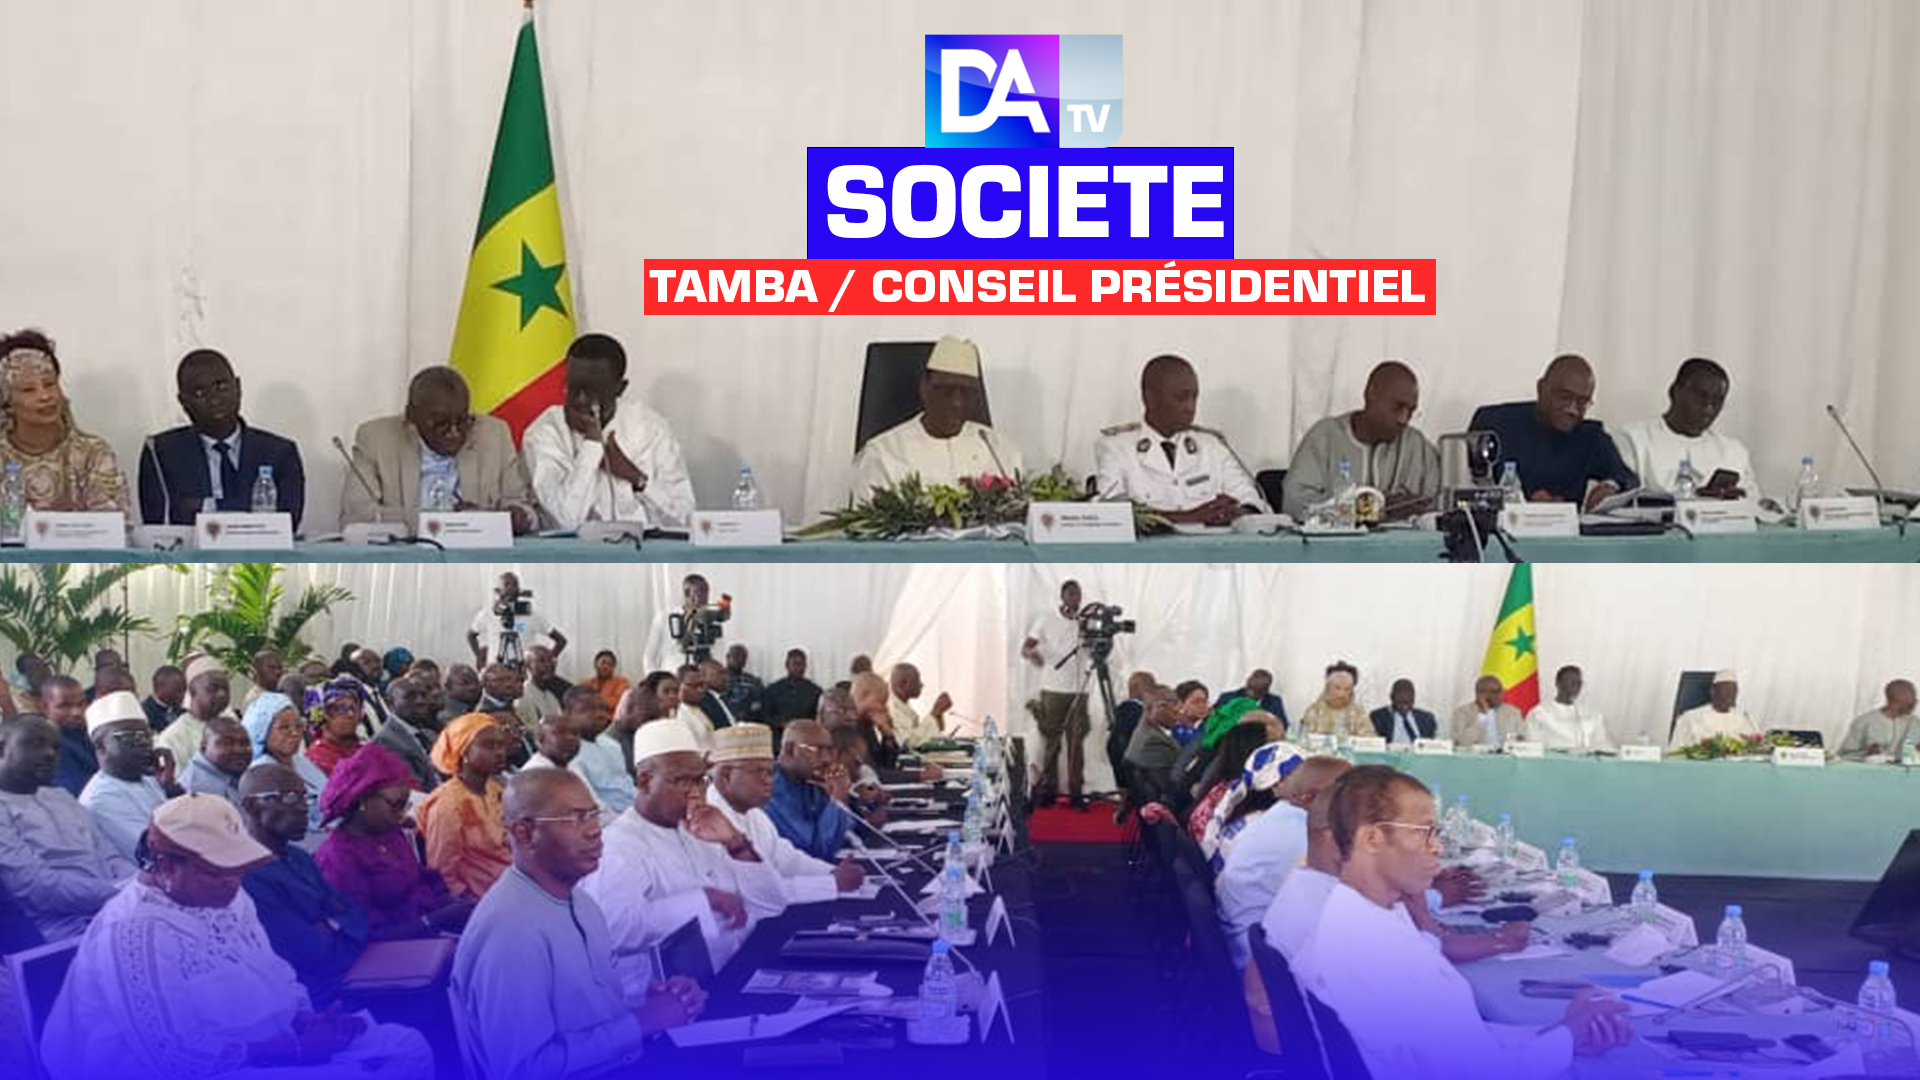 Conseil présidentiel à Tamba : Le président Macky Sall déroule son bilan depuis 2012, note les manquements et promet un futur d’espérance…